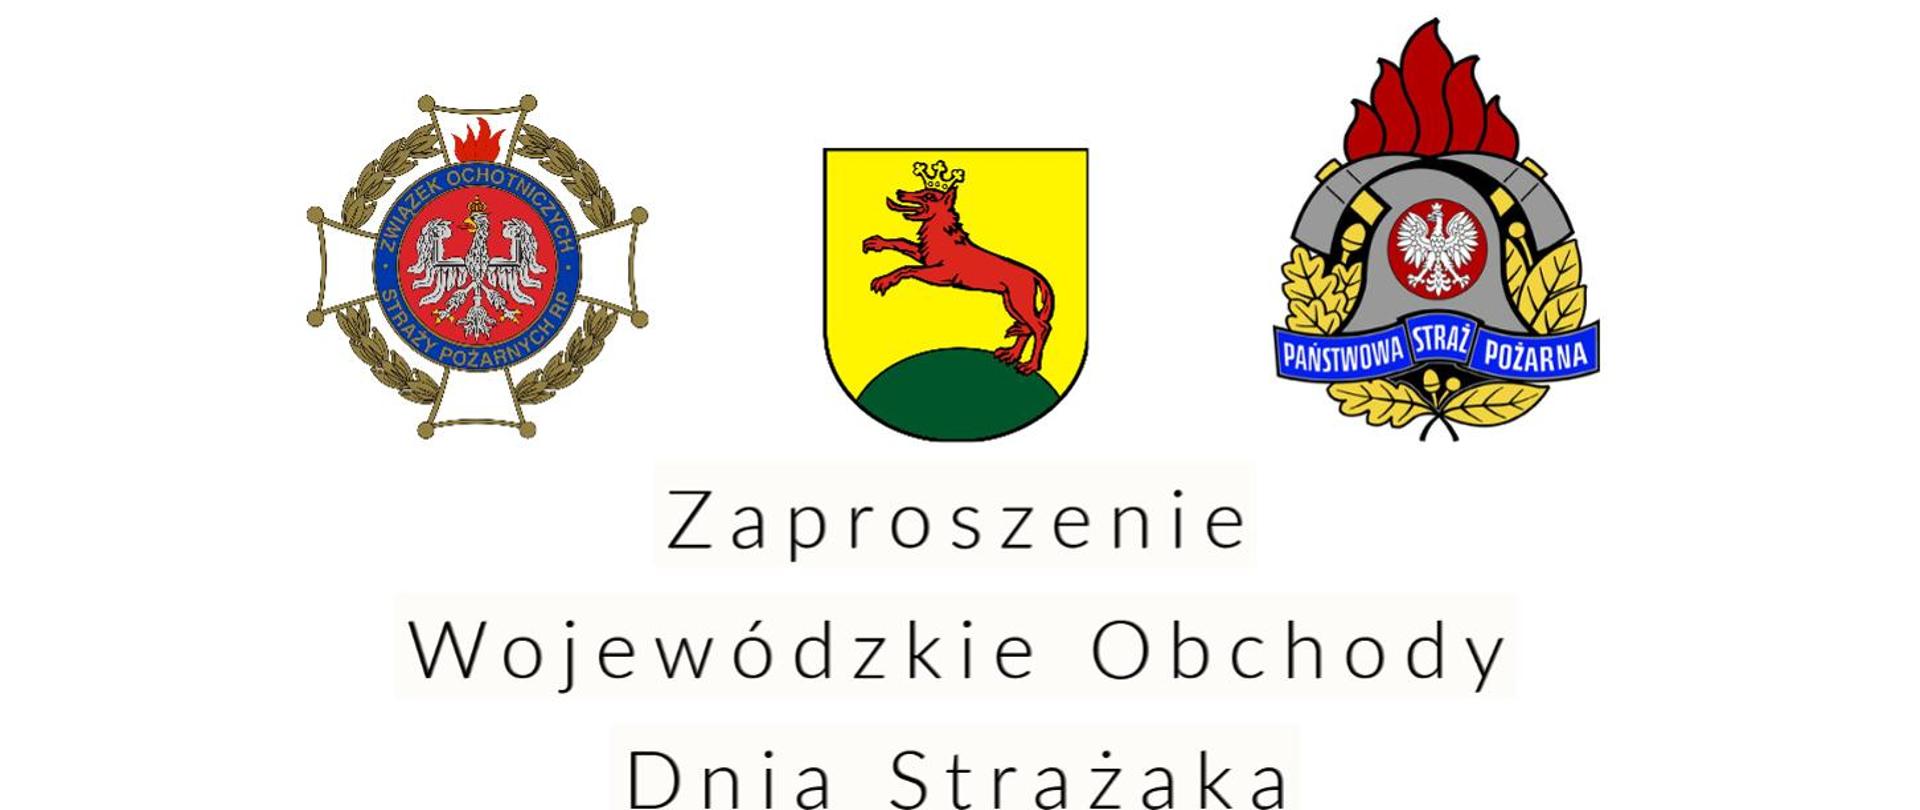 Grafika promującą , zaproszenie na Wojewódzkie Obchody Dnia Strażaka. Na środku grafiki 3 loga. Od lewej logo OSP, na środku logo gospodarza Łobza a po prawej logo PSP. Poniżej tekst zaproszenia. 